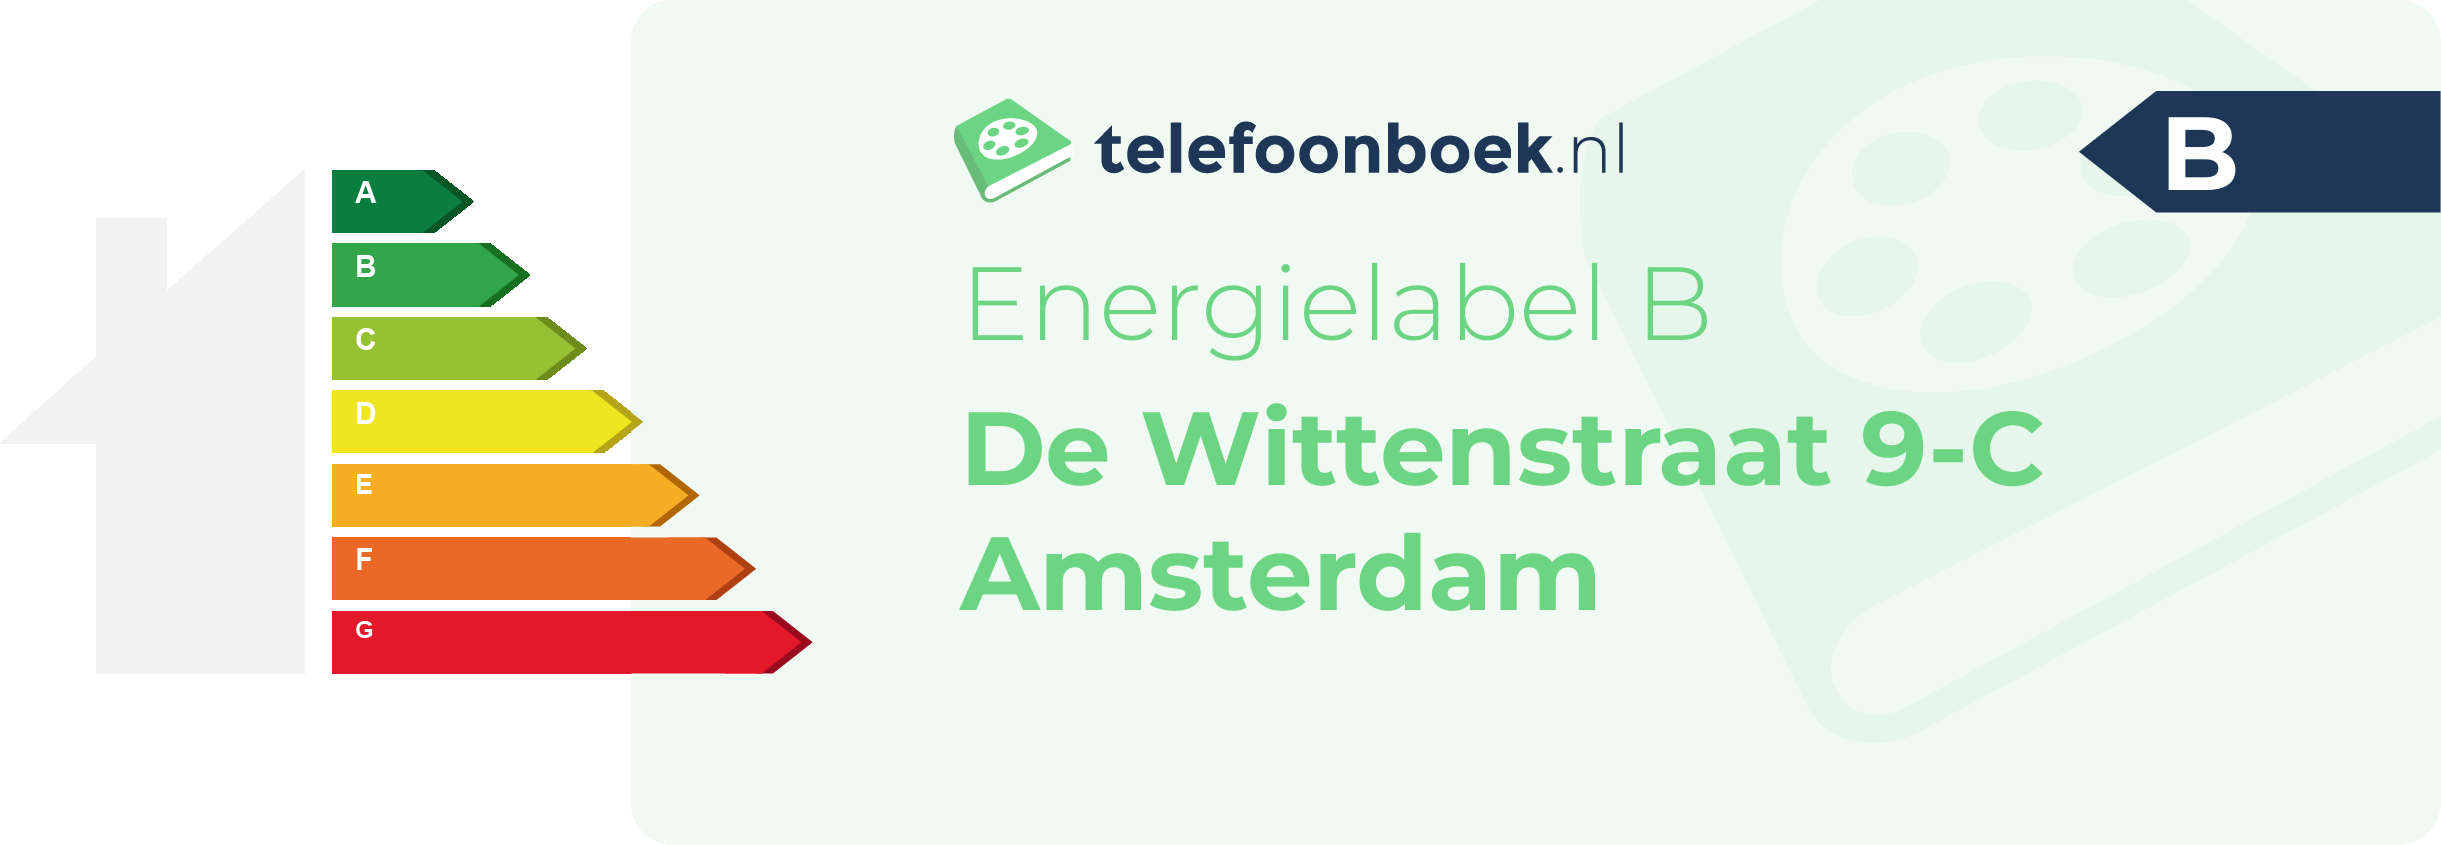 Energielabel De Wittenstraat 9-C Amsterdam